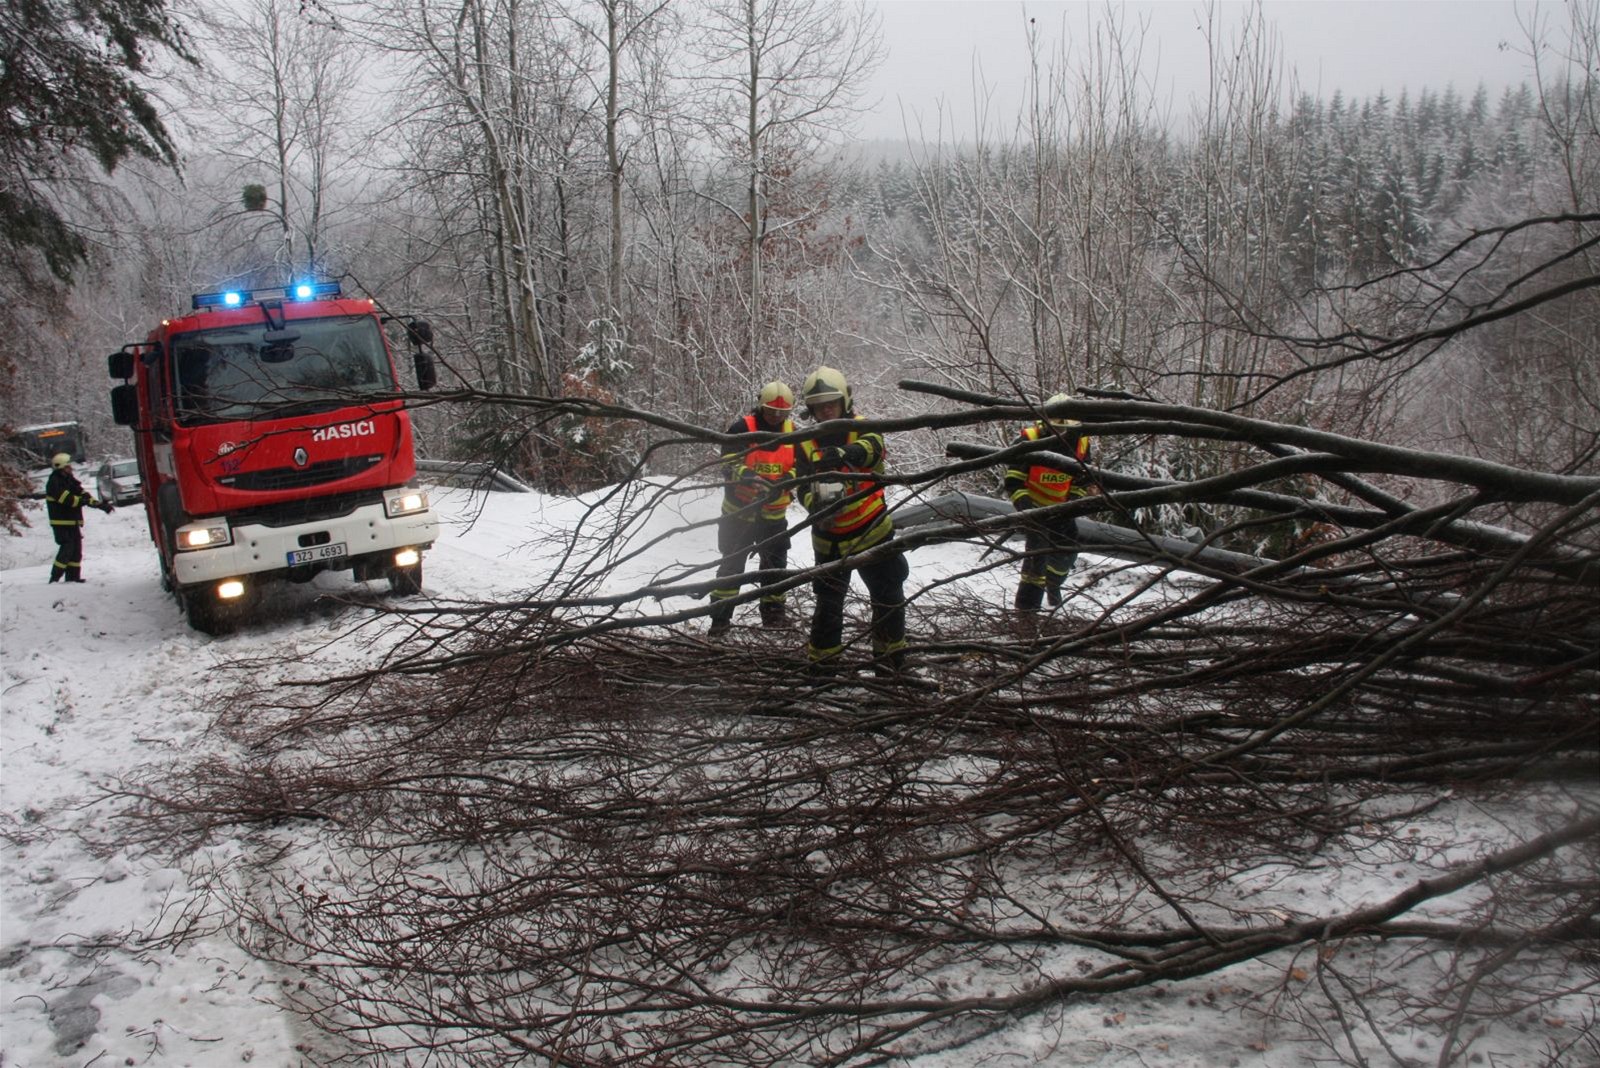 Hasii odklízejí strom ze silnice na Zlínsku. (5. ledna 2012)